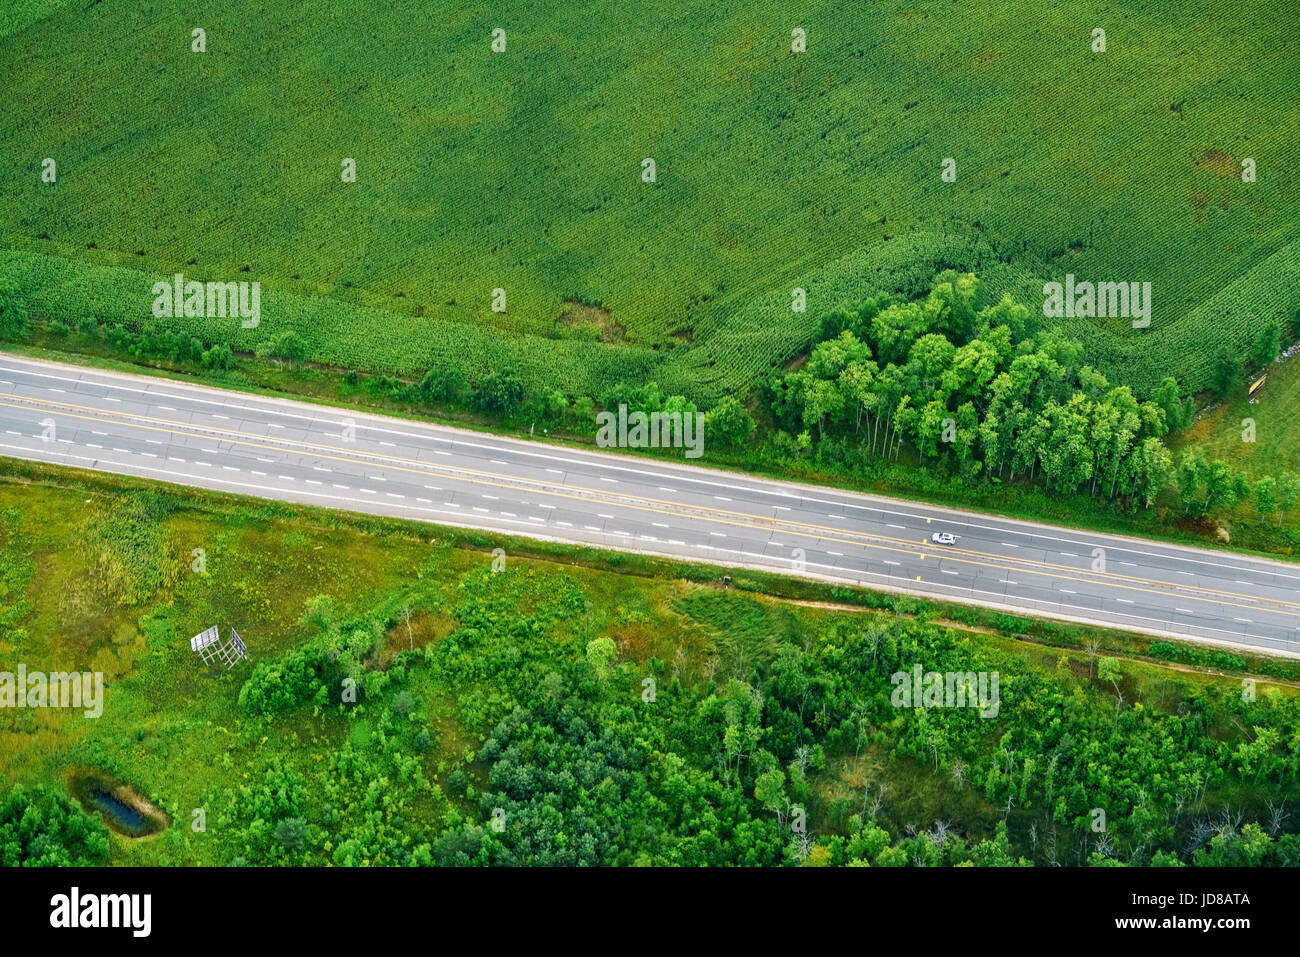 Vista in elevazione della Highway attraverso il centro di Campi, Toronto, Ontario, Canada. fotografia aerea da ontario canada 2016 Foto Stock